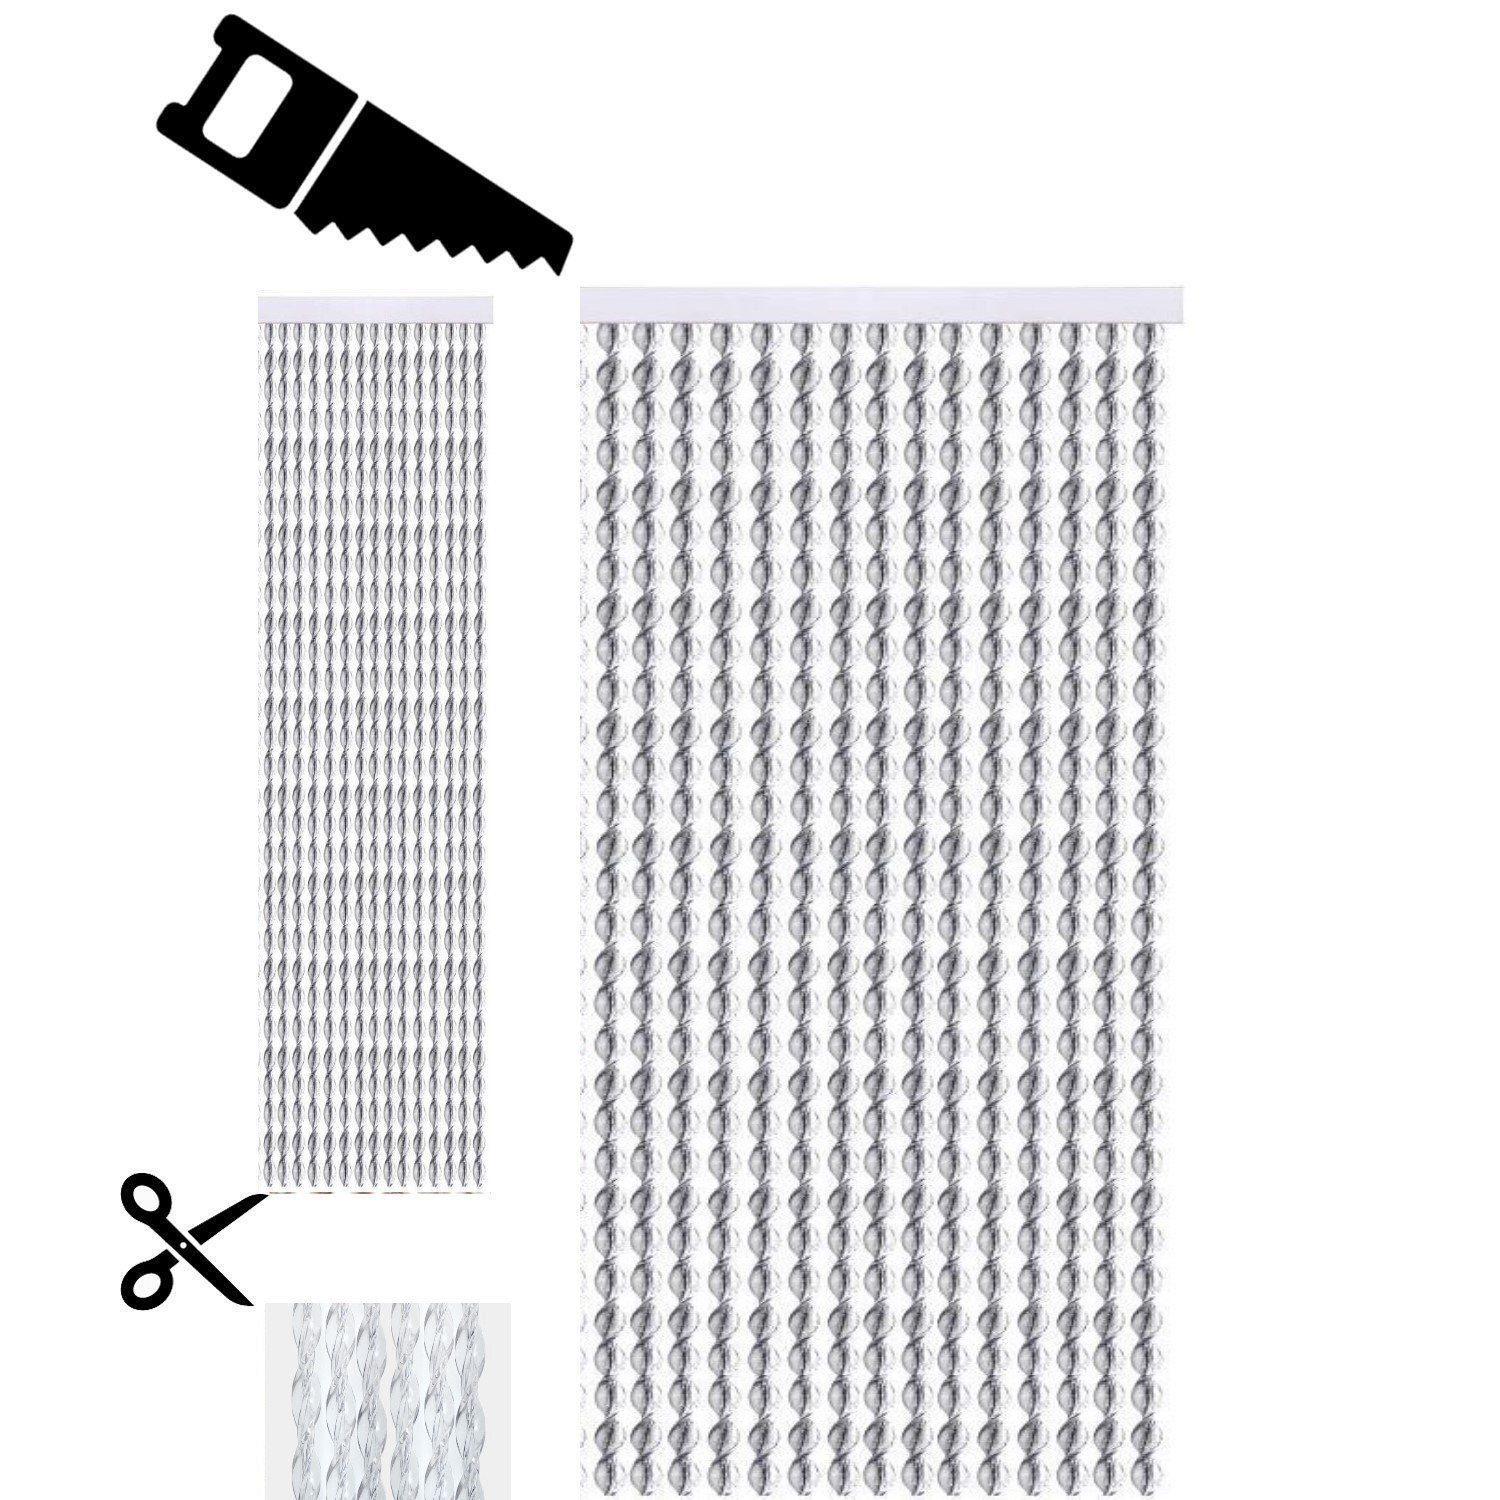 Insektenschutz Aluminiumträger Pvc Türvorhänge Modell Stern Fadenvorhang